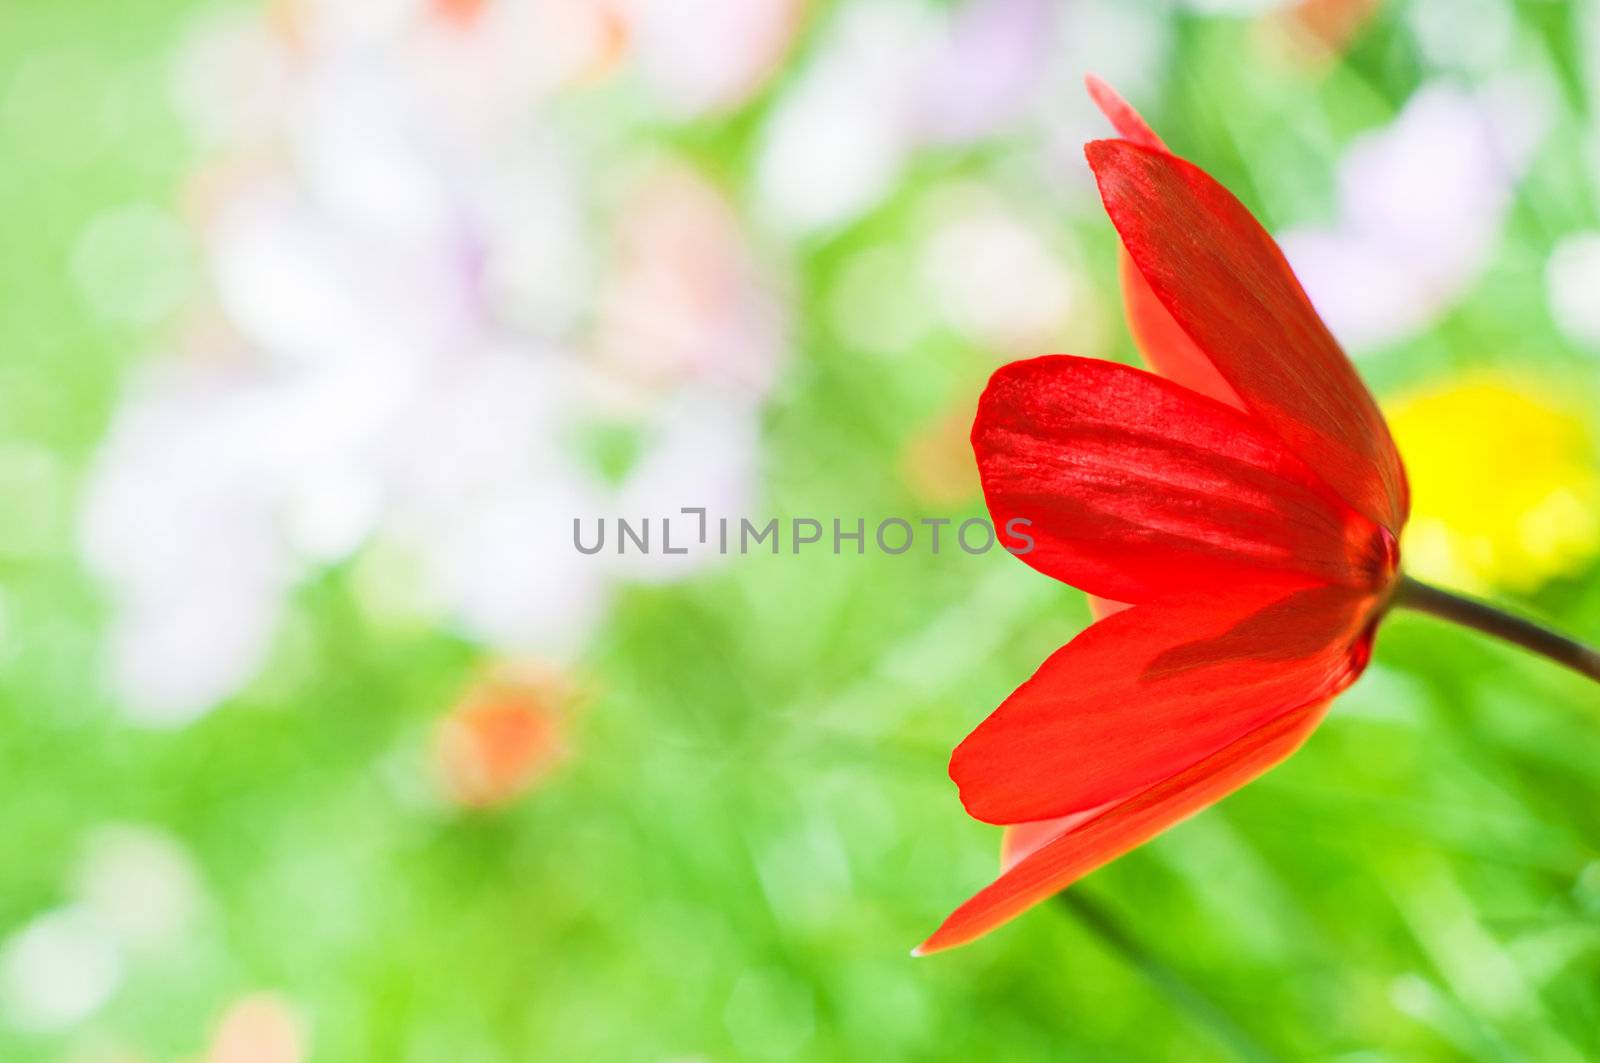 Floral Springtime Tulip by frannyanne